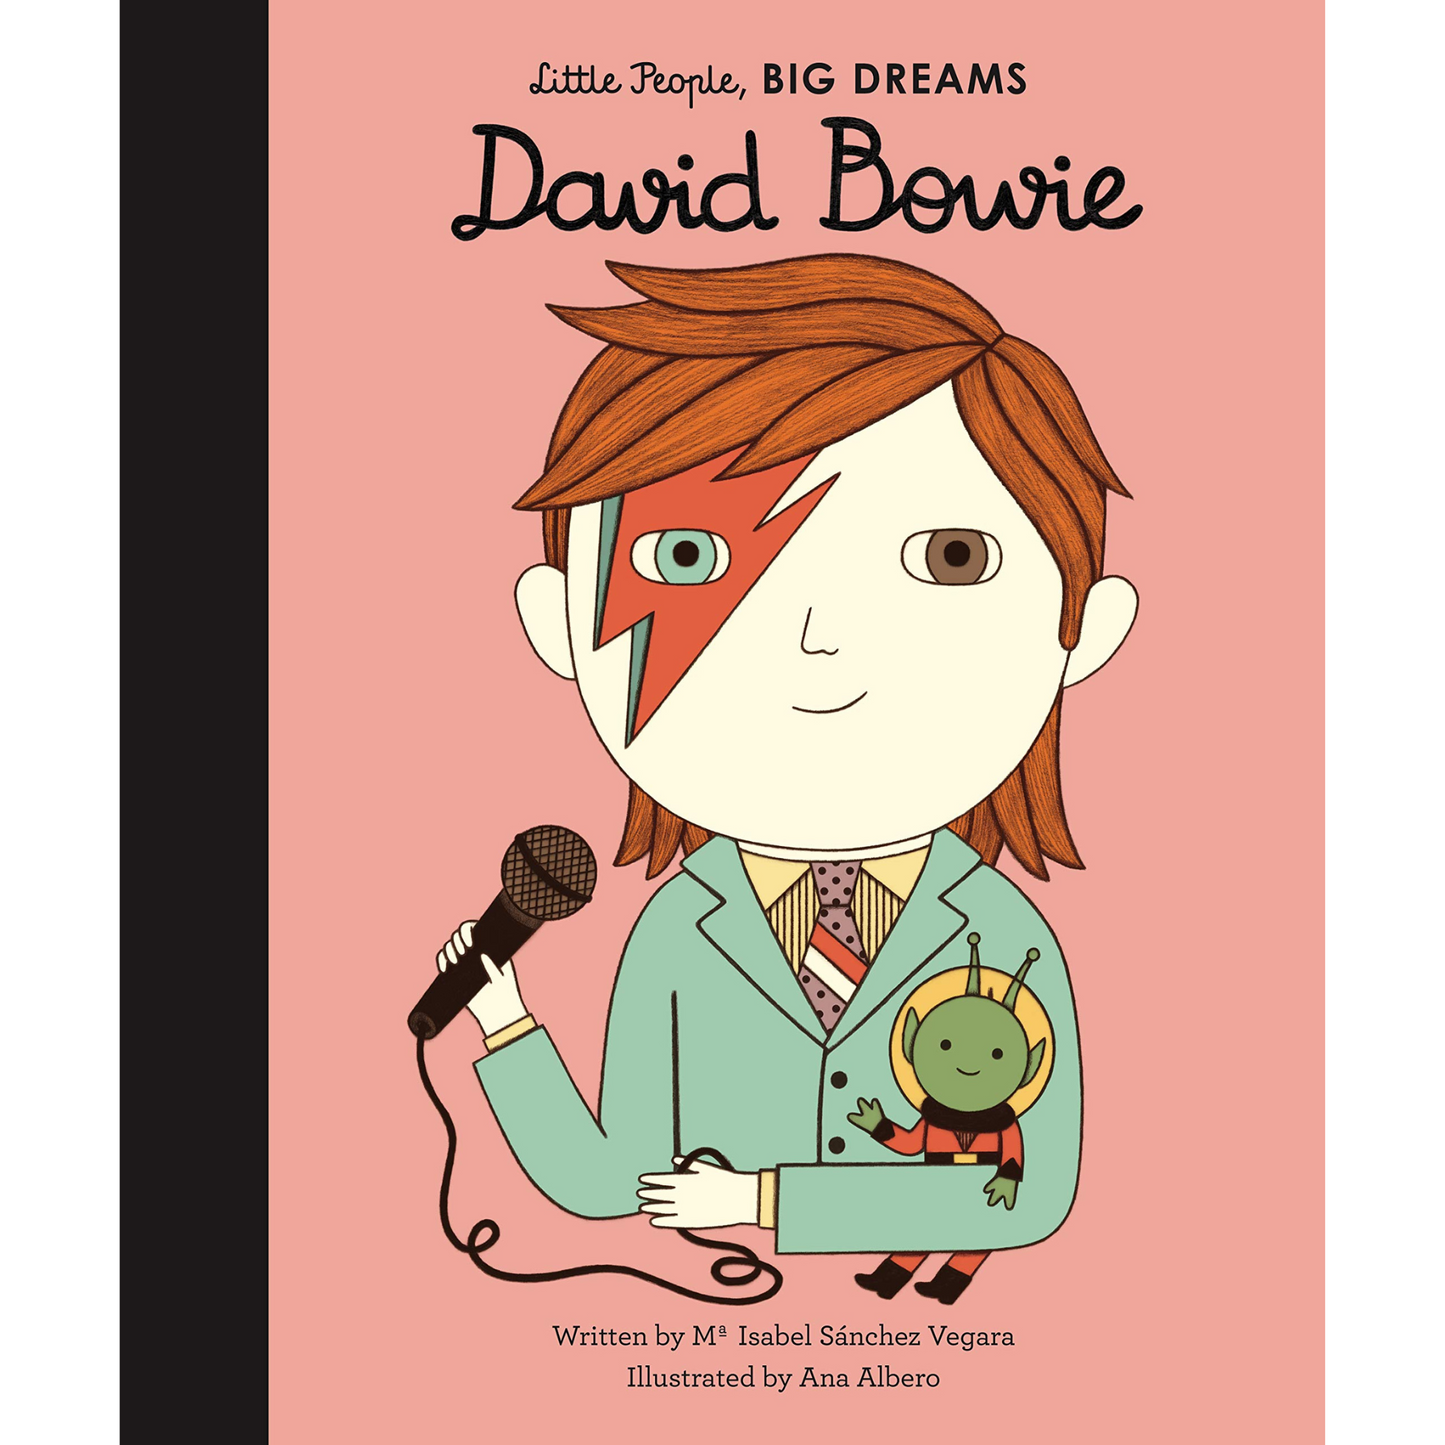 David Bowie - Little People